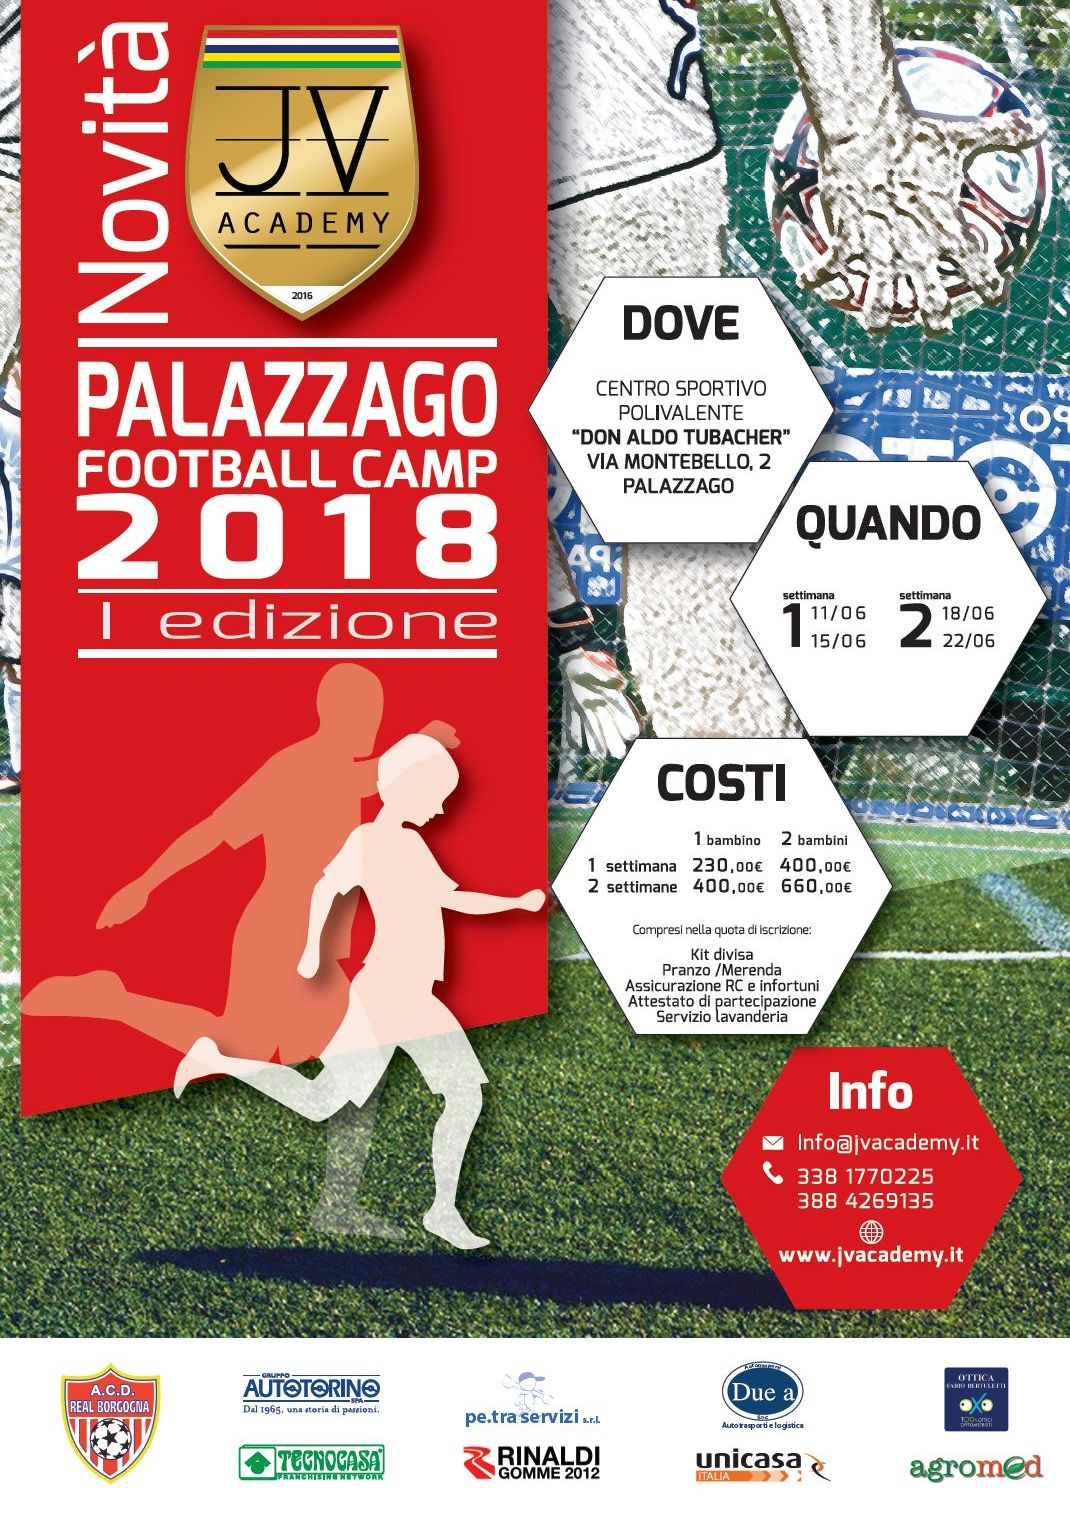 Real Borgogna - Palazzago Football Camp 2018